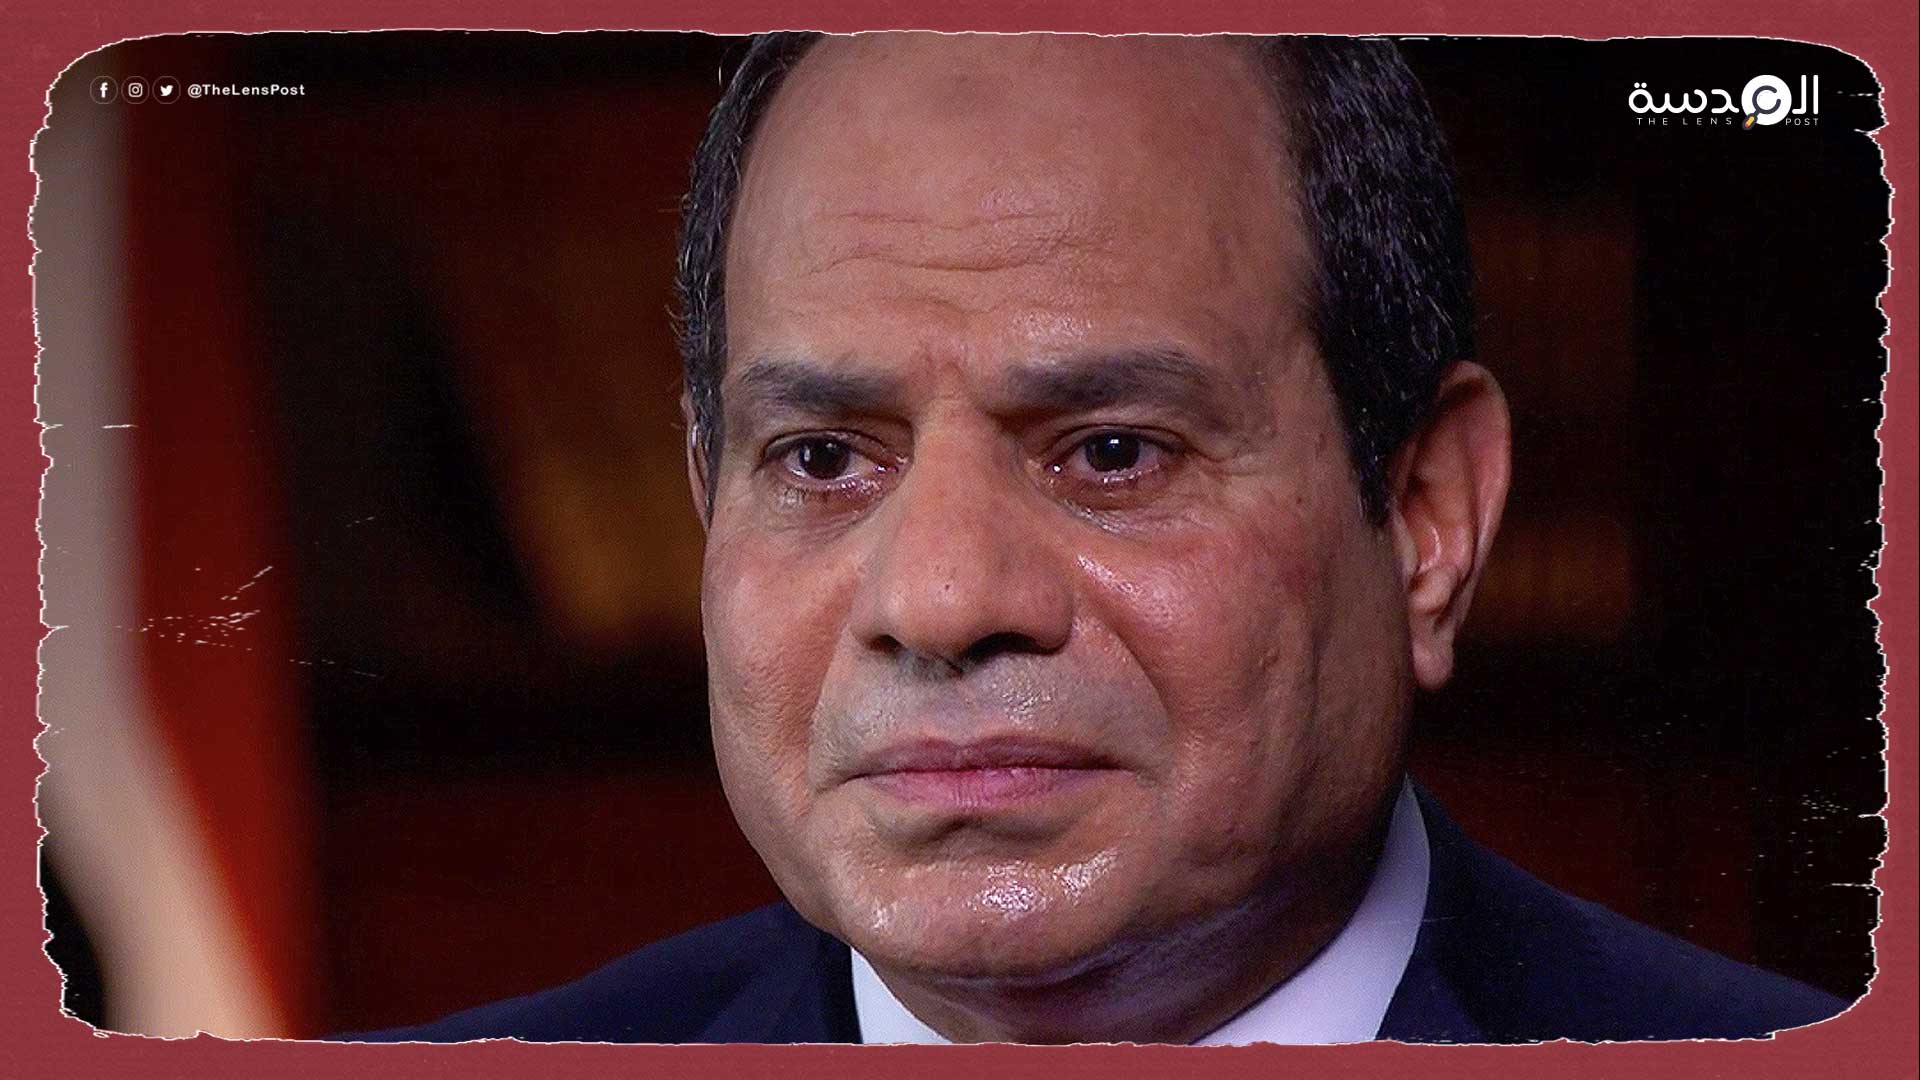 المونيتور: الدولة المصرية تختنق بالديون والسيسي يستغيث بالخليج